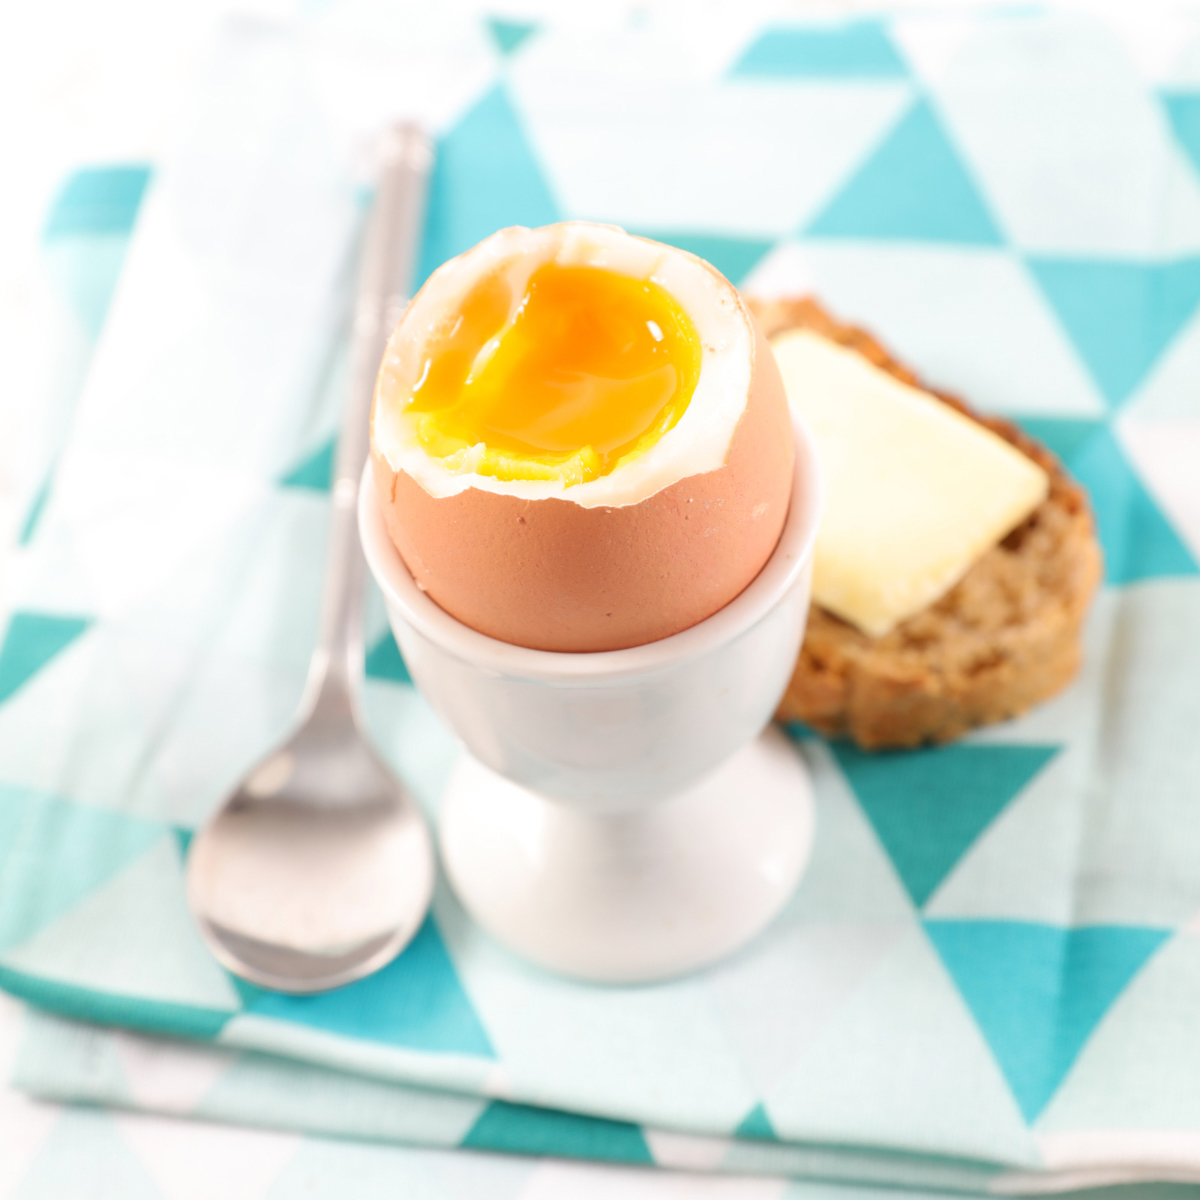 Jajko na miękko, podane na podstawce do jajka z dodatkiem pieczywa i masła.